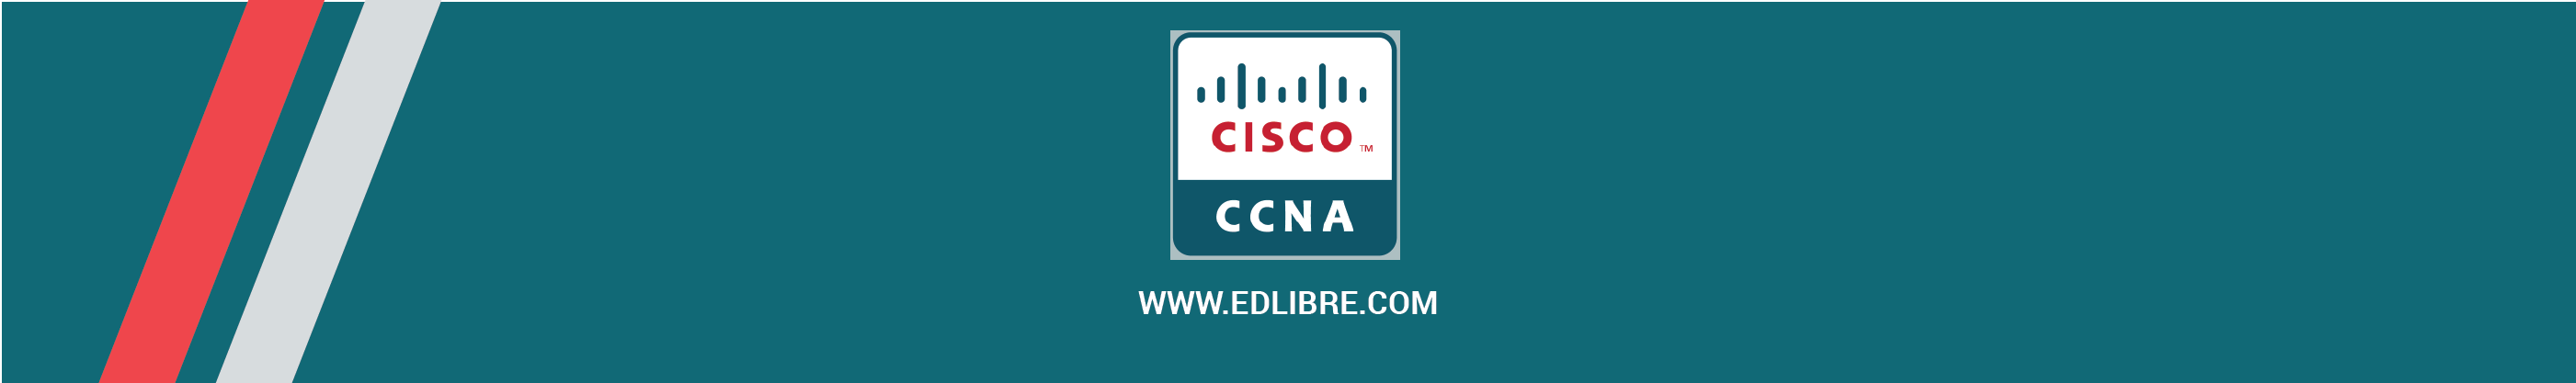 Cisco_CCNA